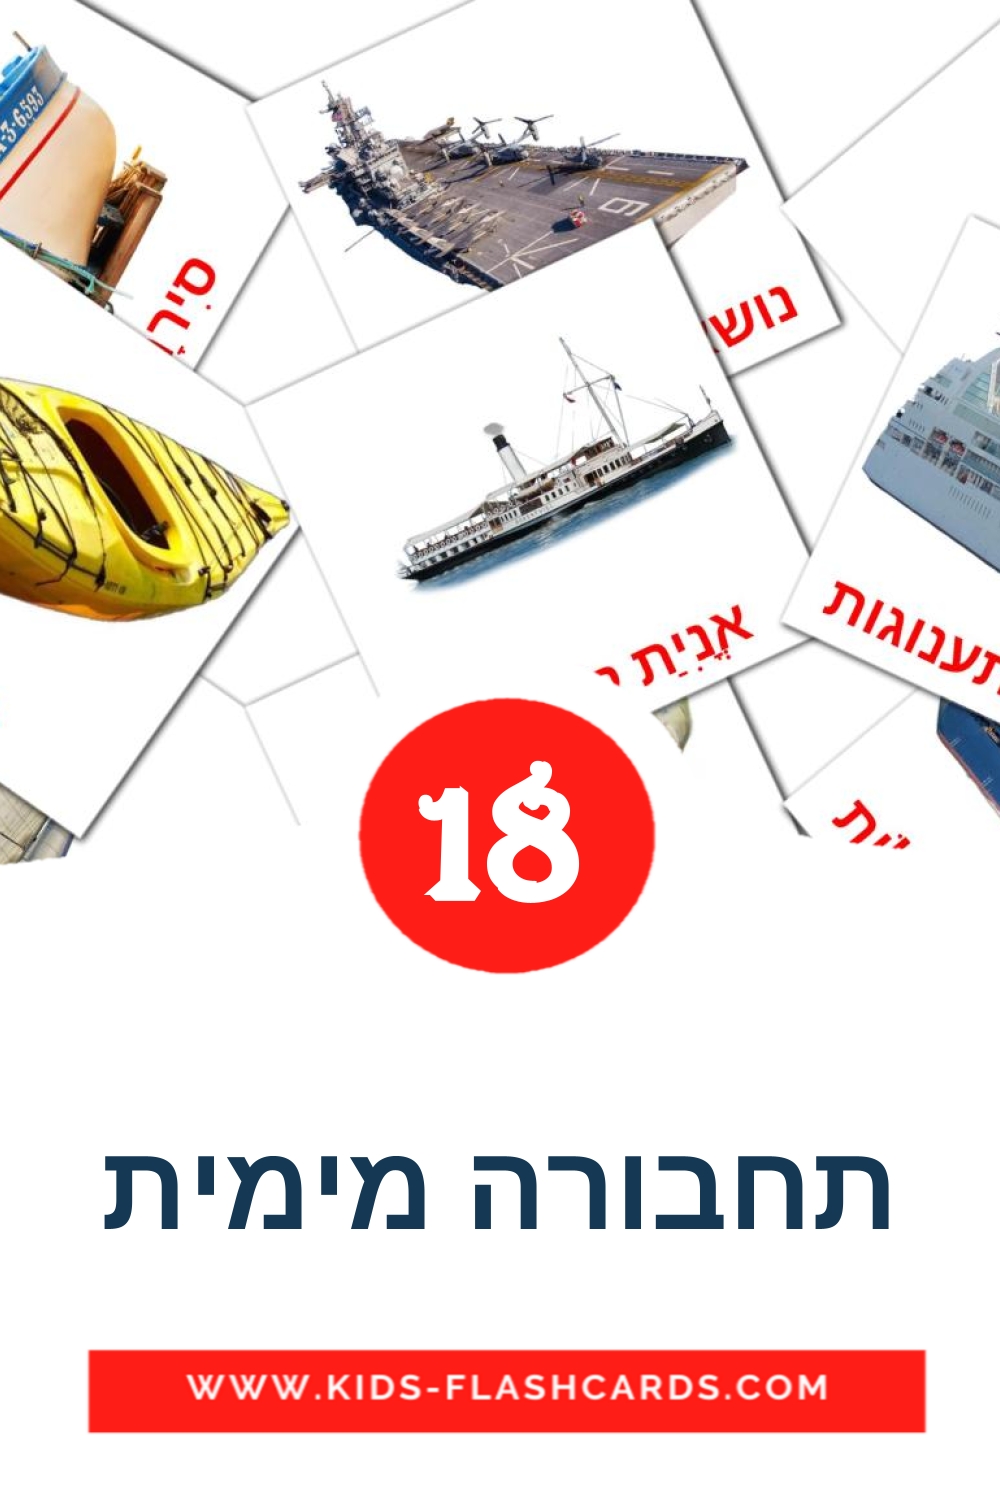 18 carte illustrate di תחבורה מימית per la scuola materna in ebraico